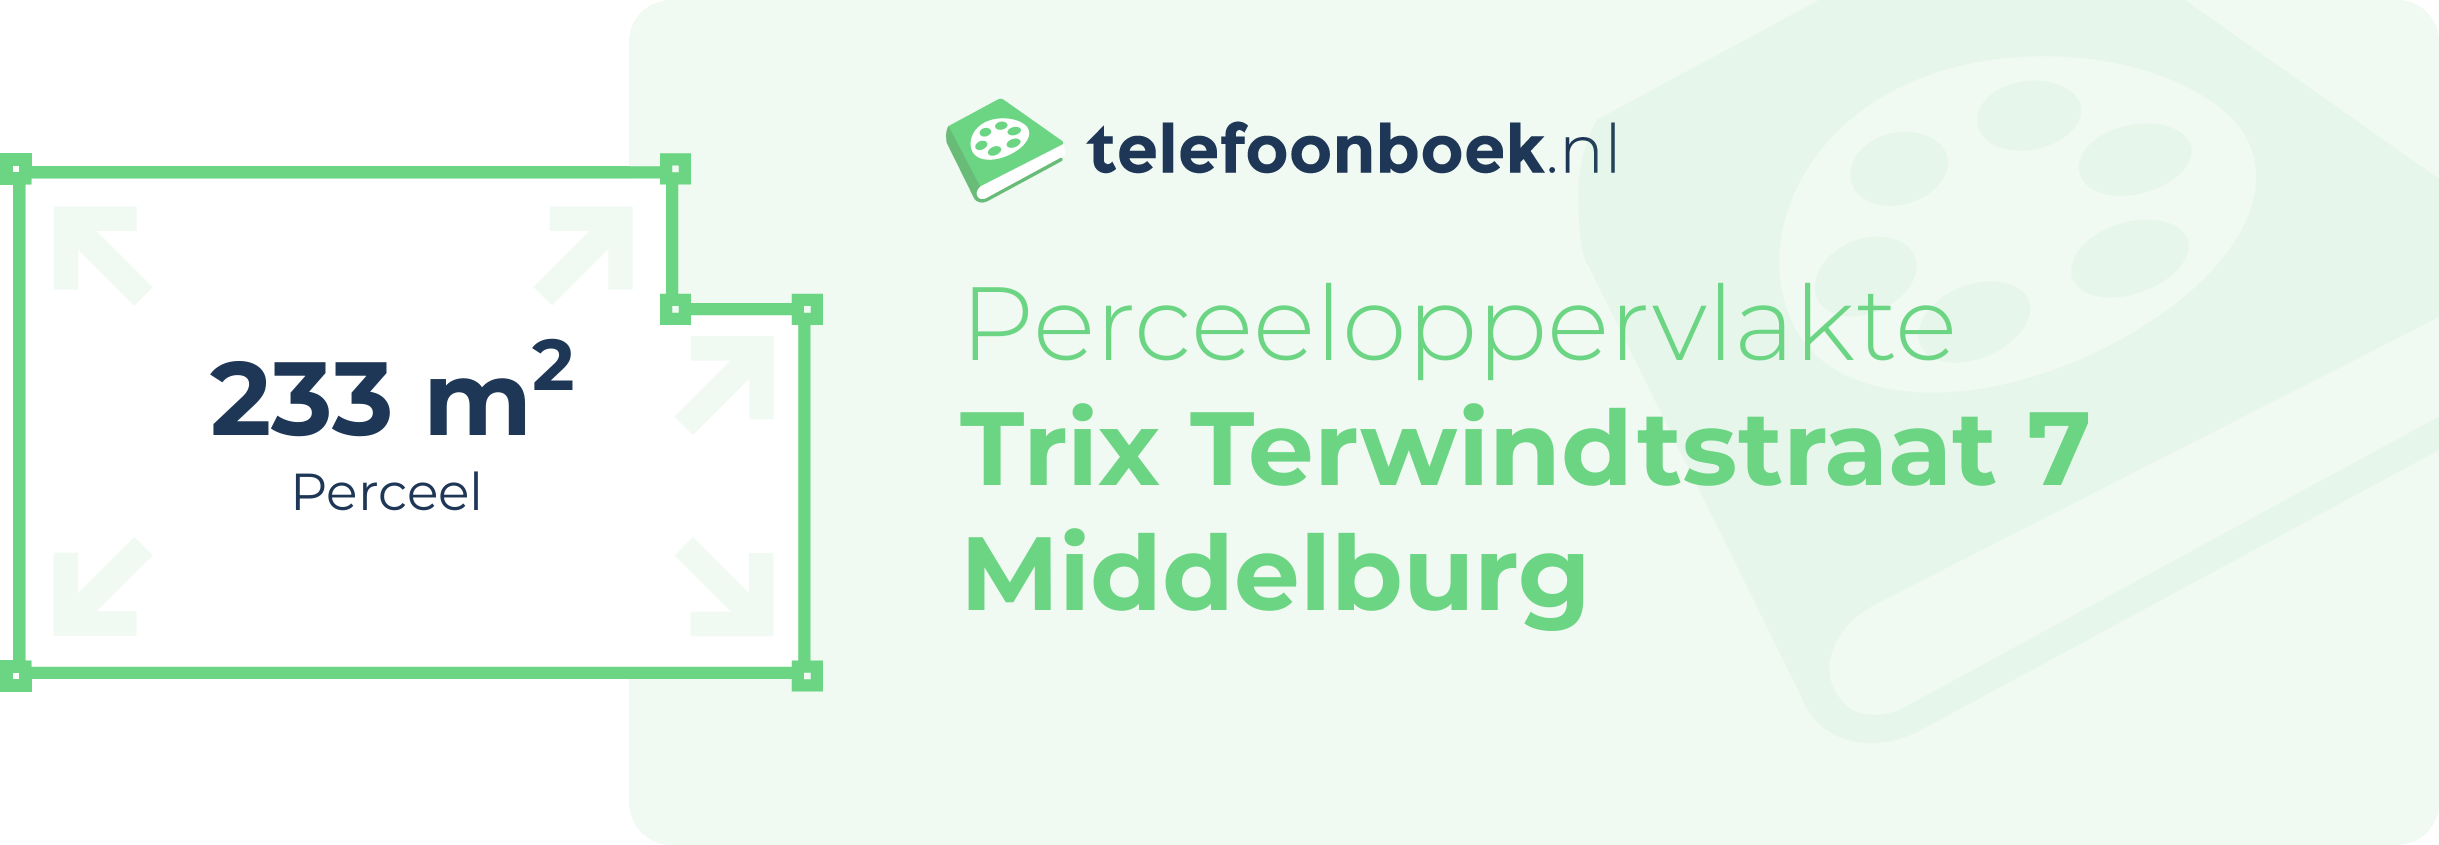 Perceeloppervlakte Trix Terwindtstraat 7 Middelburg